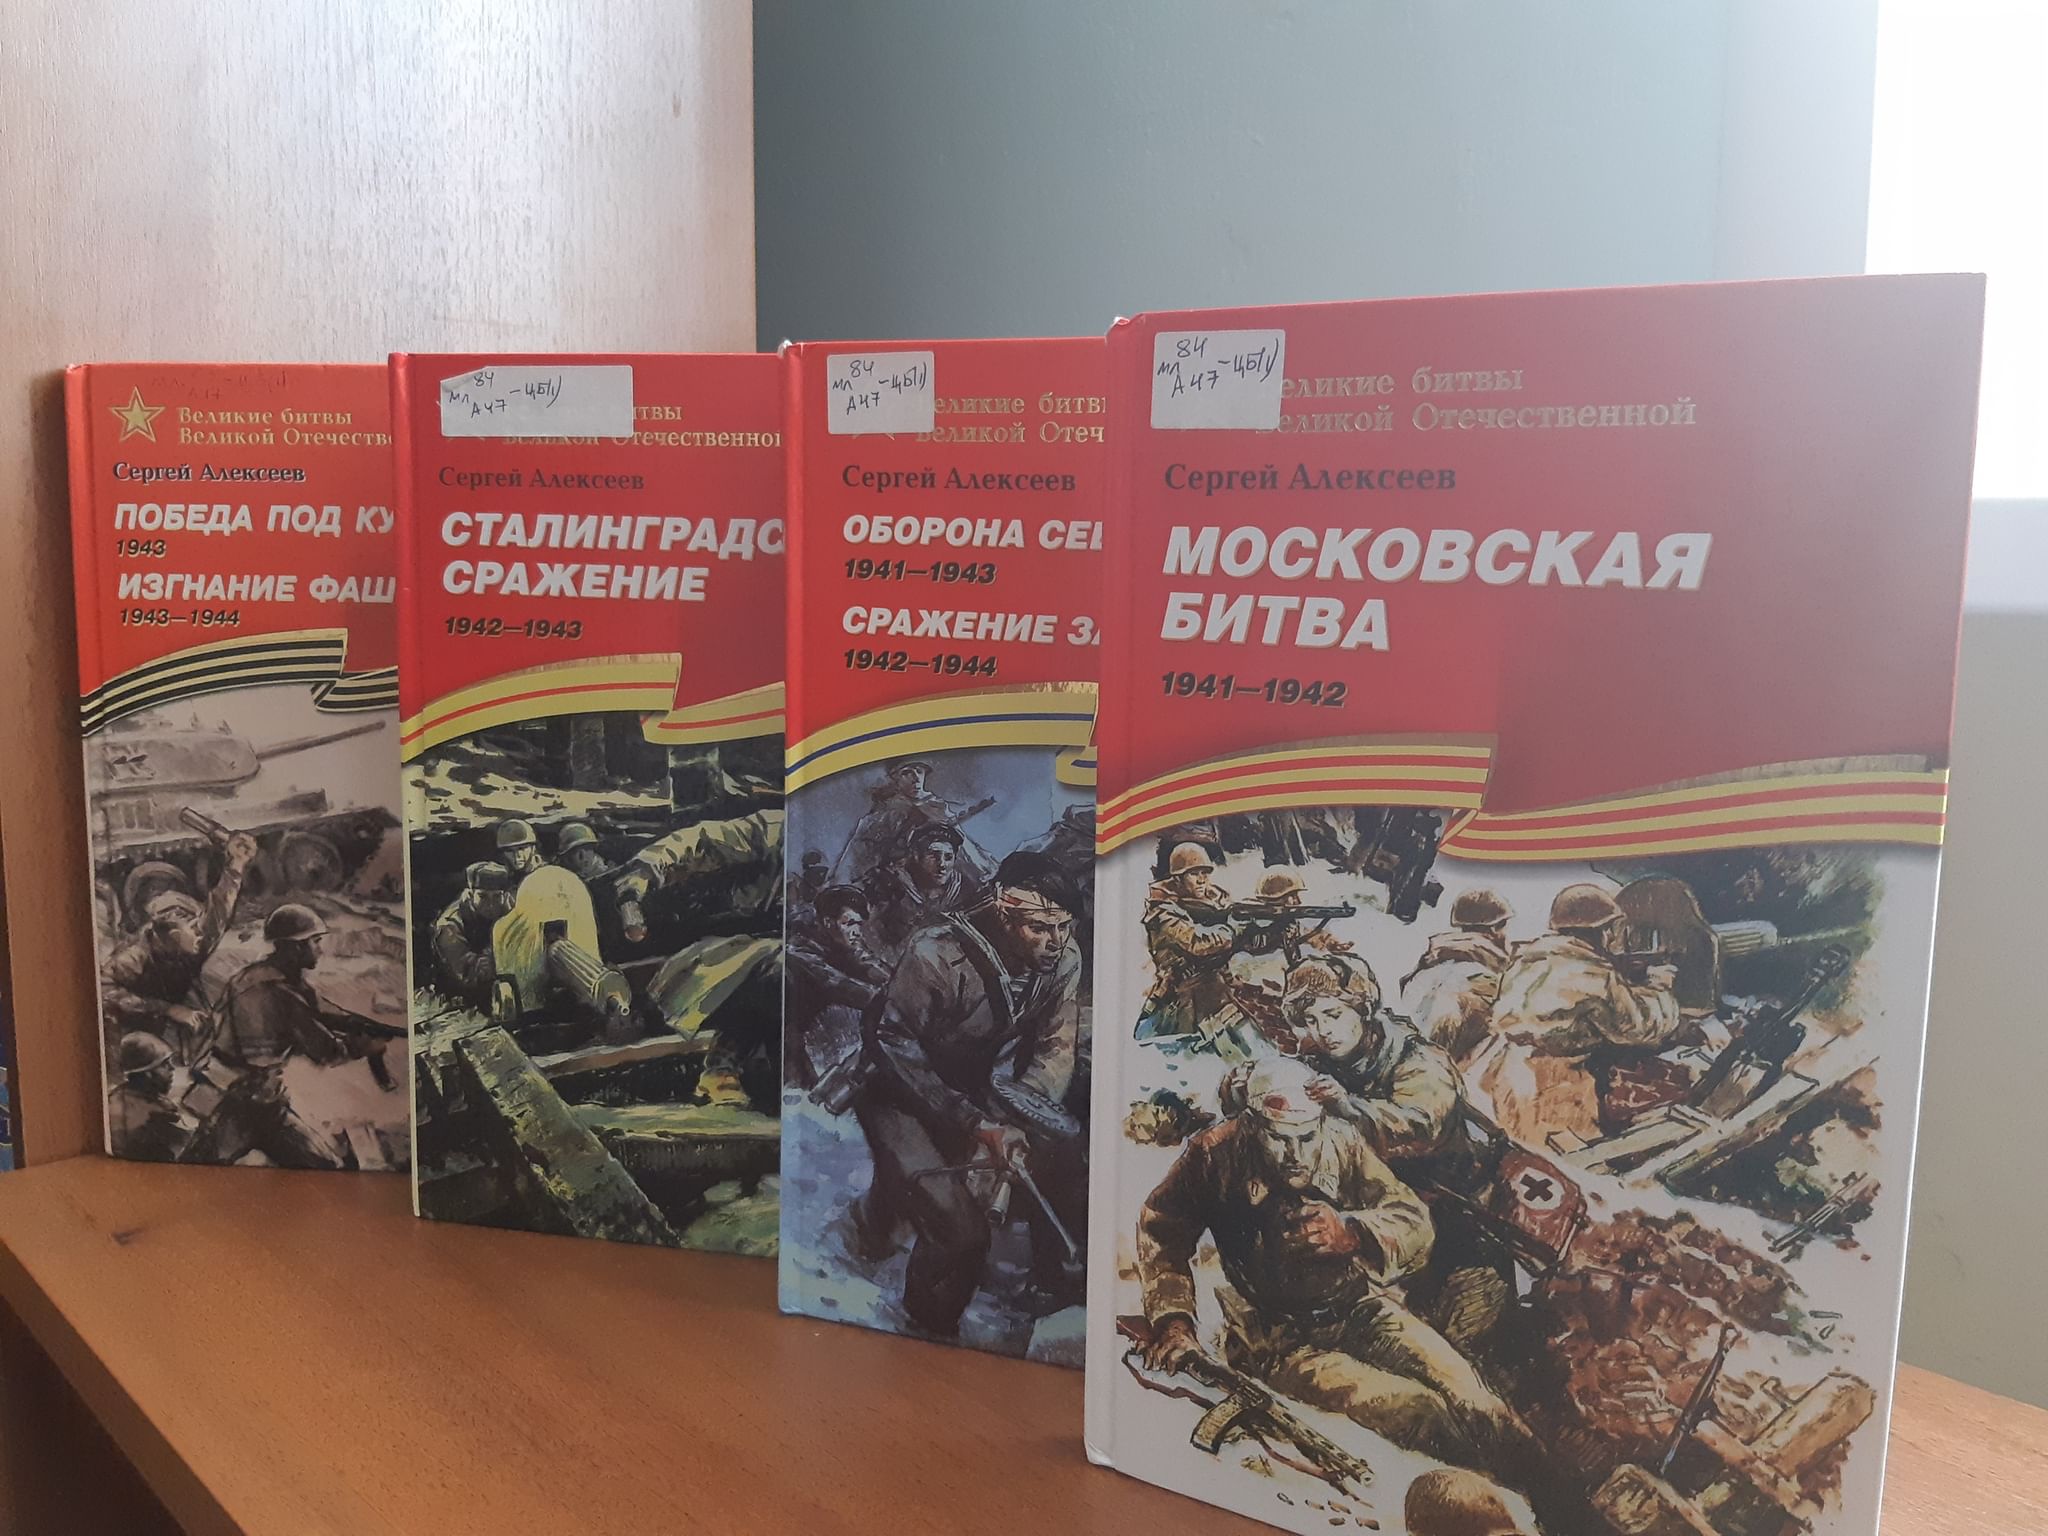 Алексеев книги серии Великие битвы Великой Отечественной